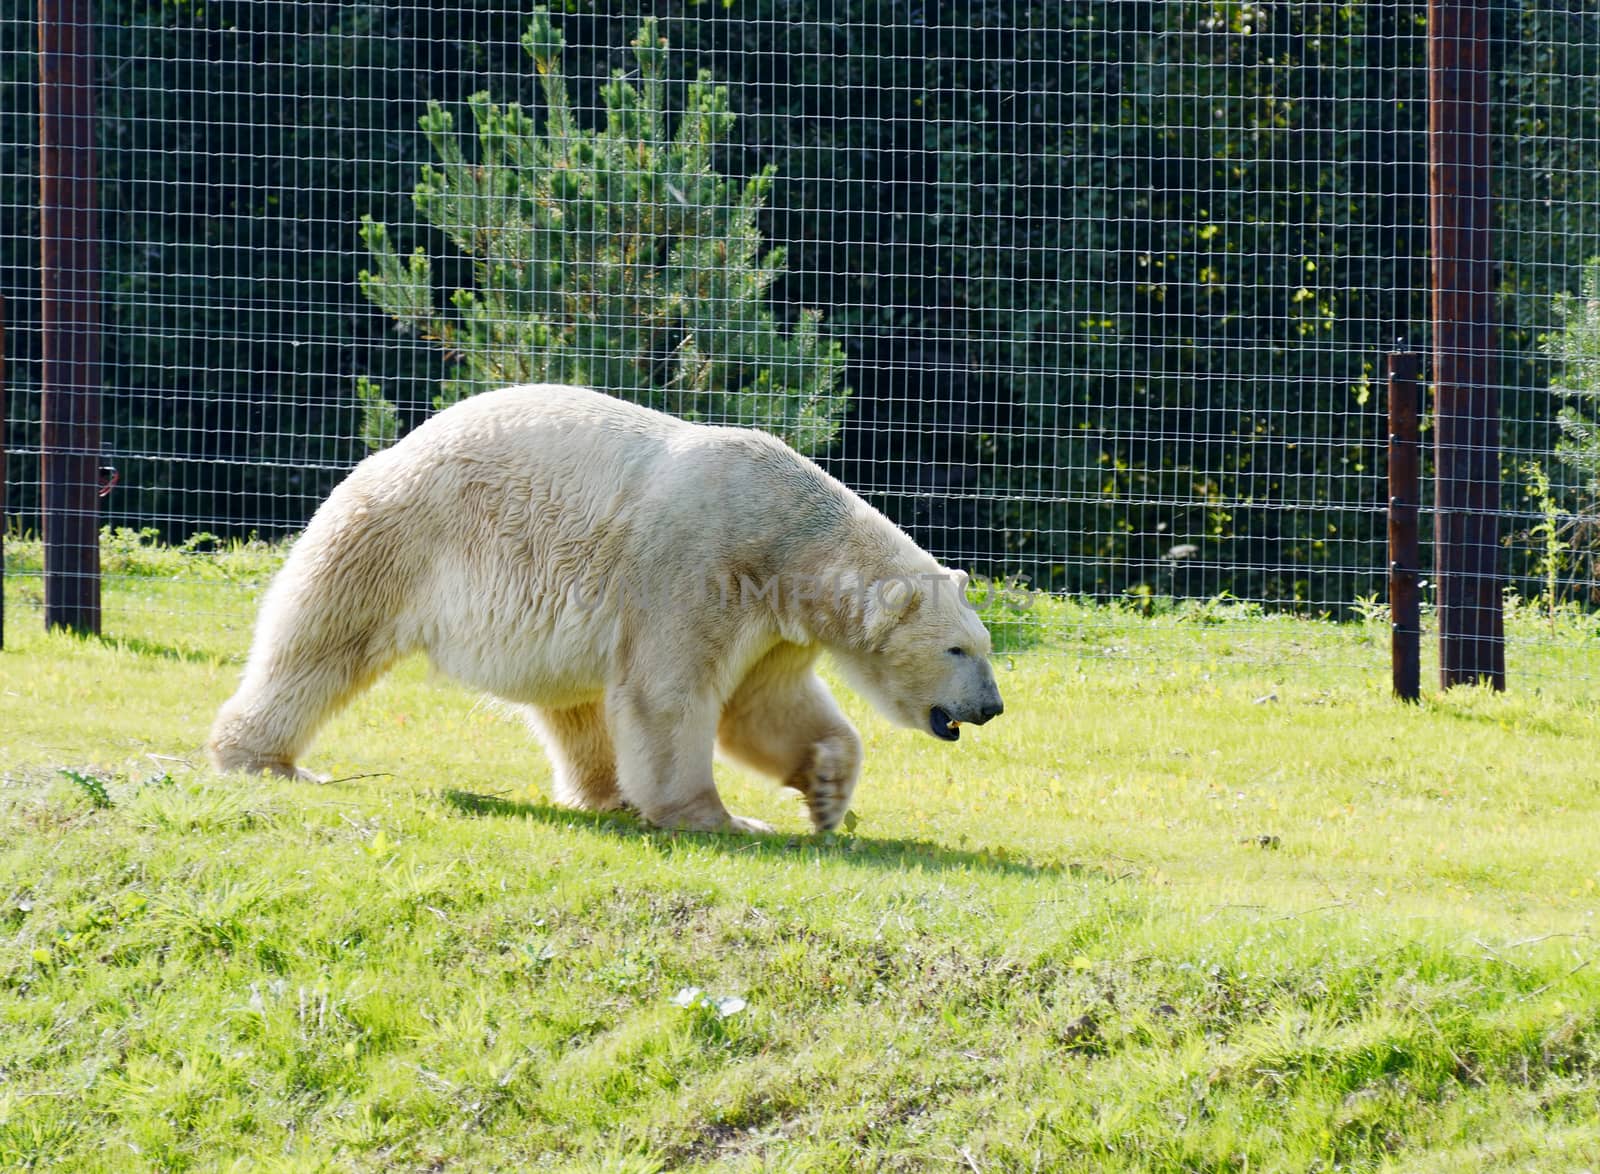 Polar bear in captivity walking on grass